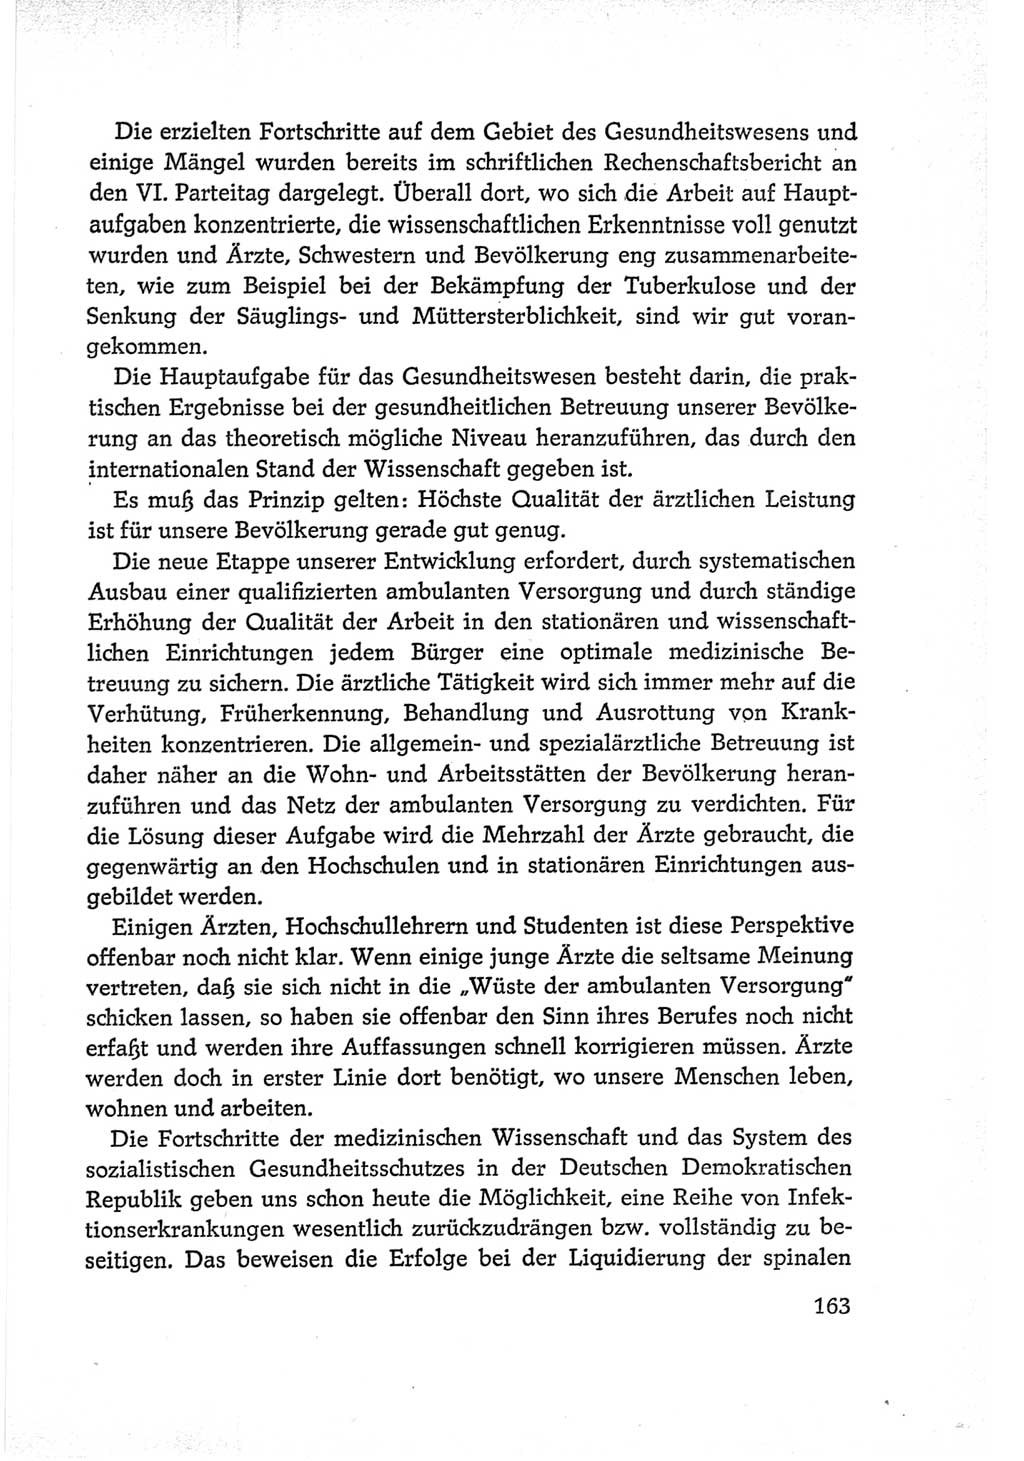 Protokoll der Verhandlungen des Ⅵ. Parteitages der Sozialistischen Einheitspartei Deutschlands (SED) [Deutsche Demokratische Republik (DDR)] 1963, Band Ⅰ, Seite 163 (Prot. Verh. Ⅵ. PT SED DDR 1963, Bd. Ⅰ, S. 163)